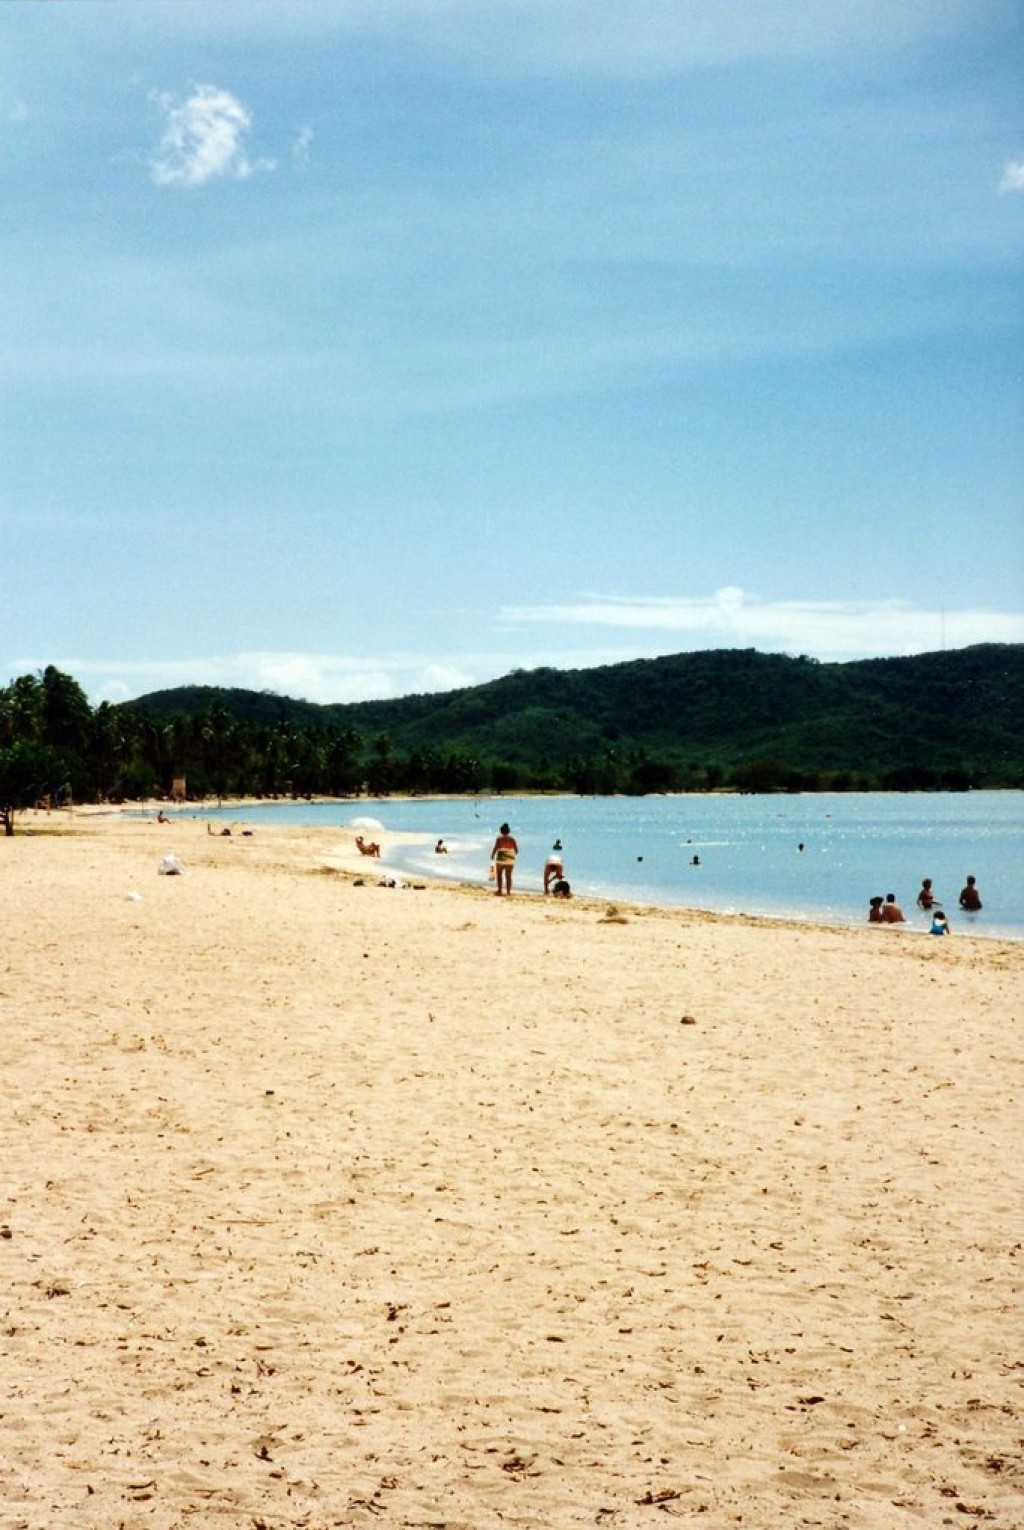 The beach at Rincon